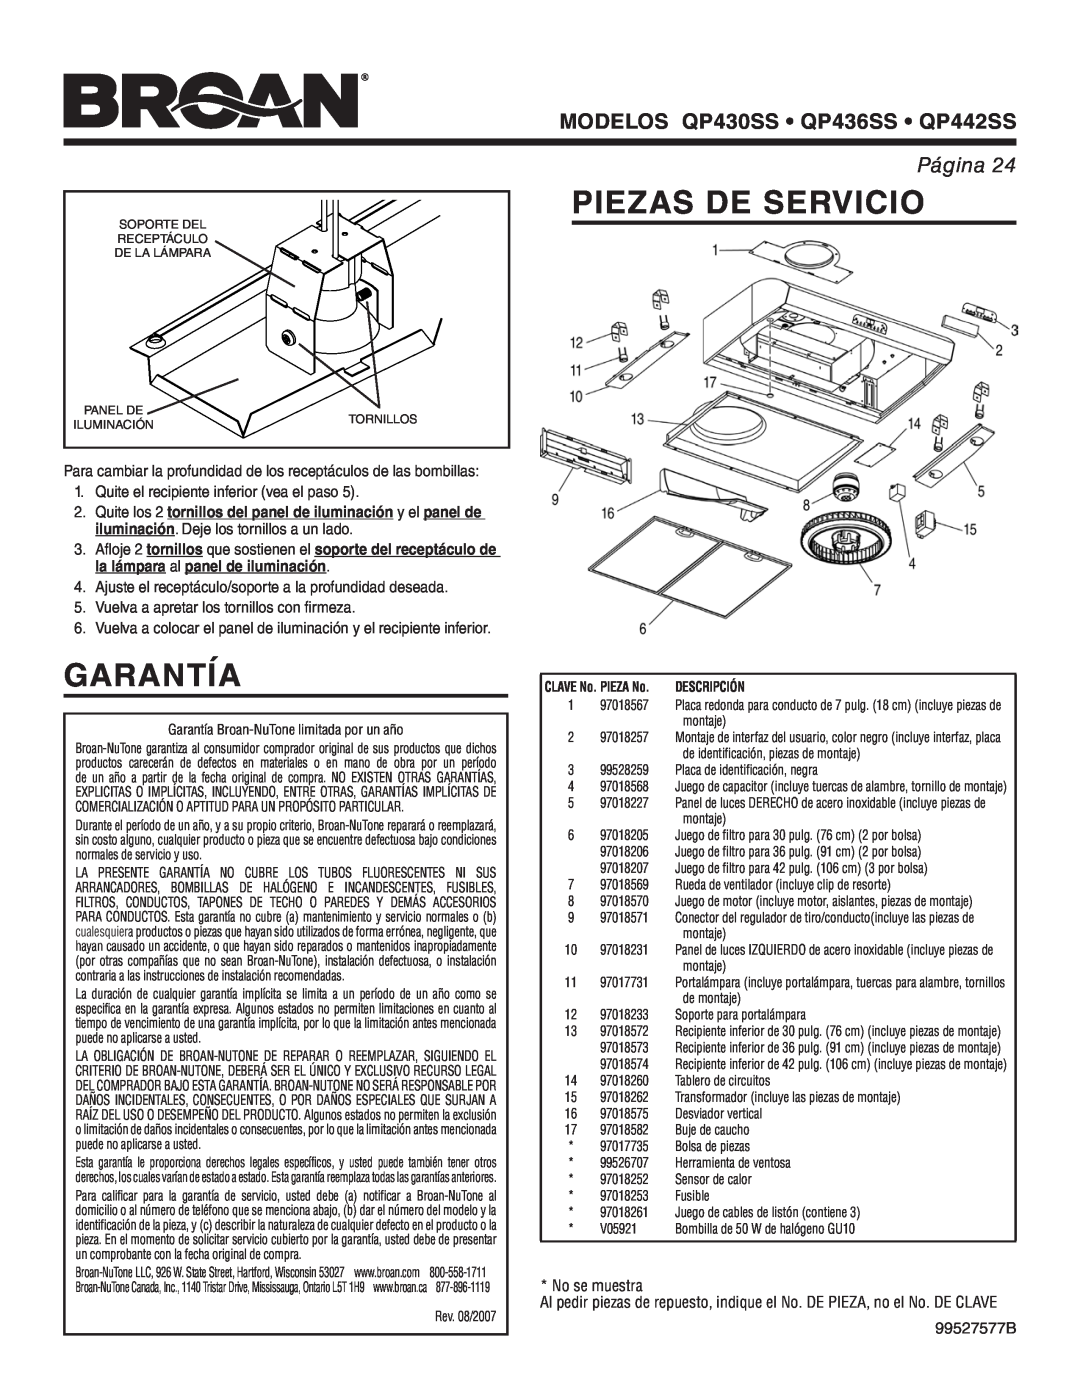 Broan warranty Garantía, Piezas De Servicio, MODELOS QP430SS • QP436SS • QP442SS, Página, No se muestra, 99527577B 